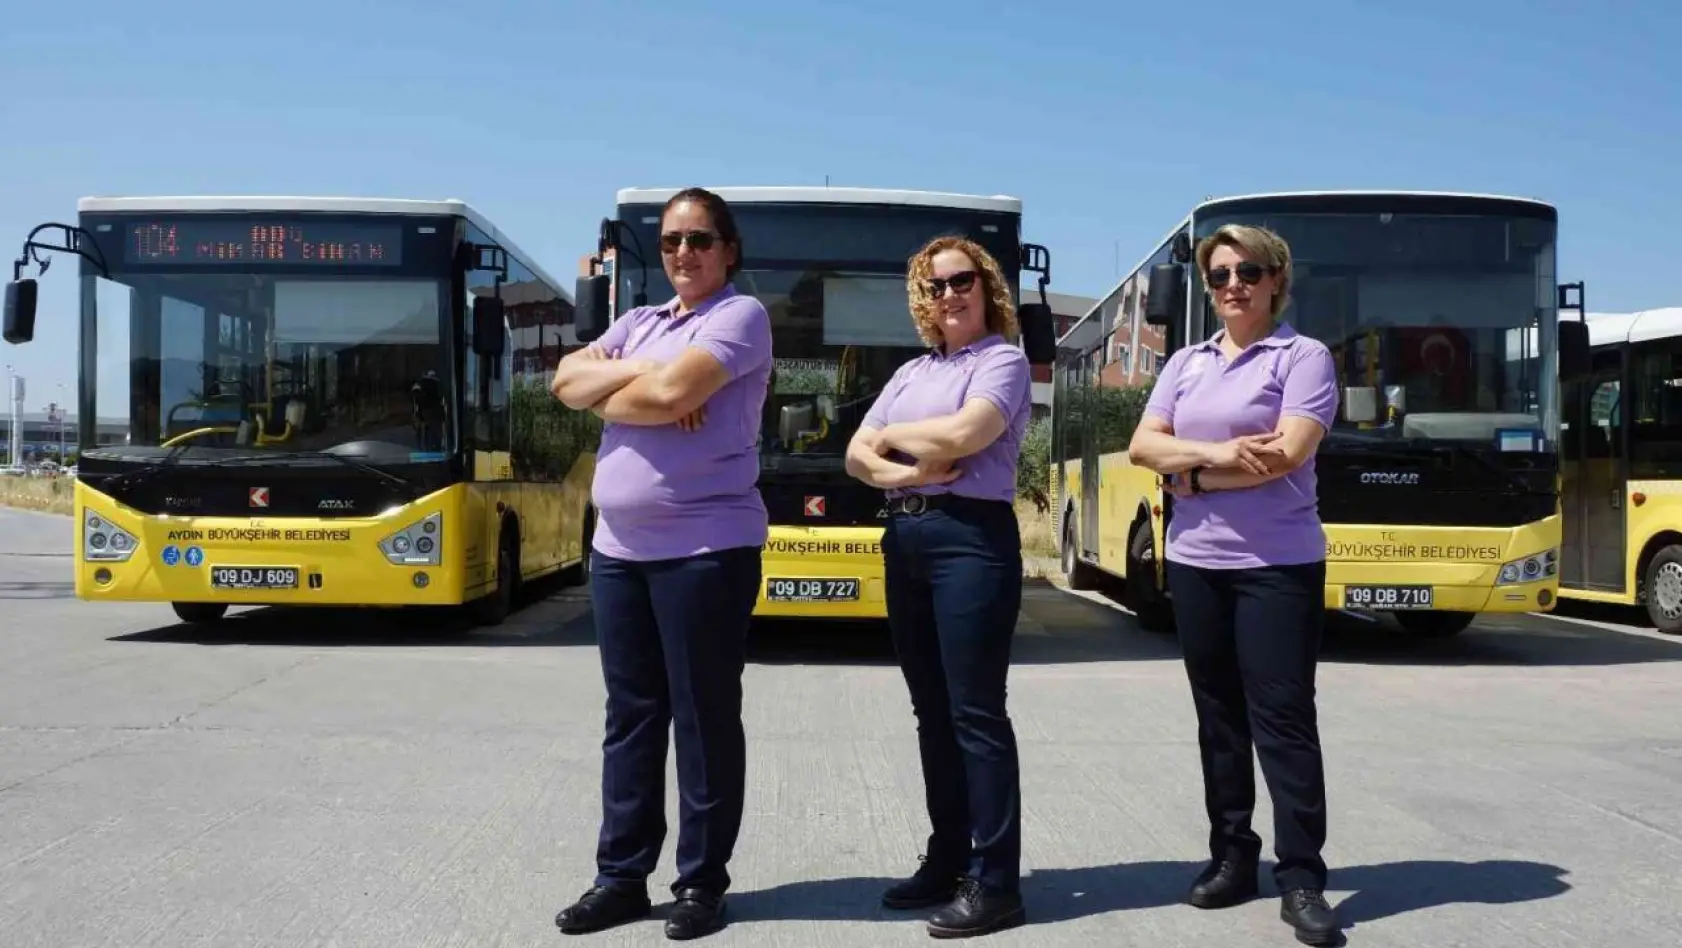 Aydın Büyükşehir'in kadın şoförleri takdir topluyor